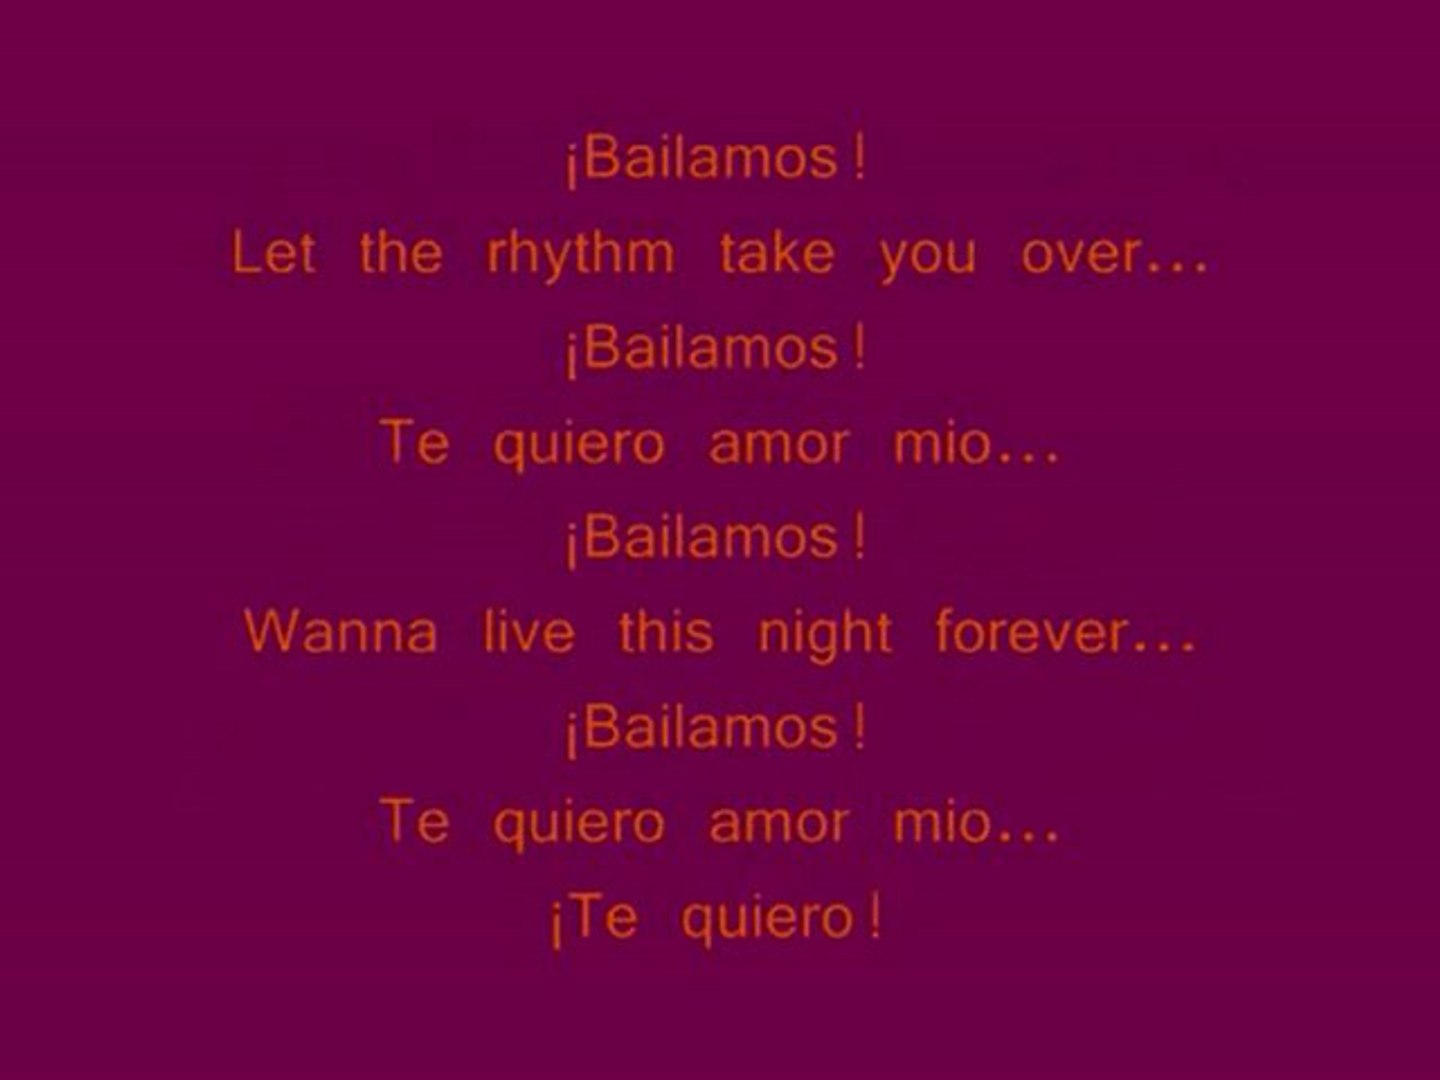 Enrique Iglesias - Bailamos With lyrics - video Dailymotion